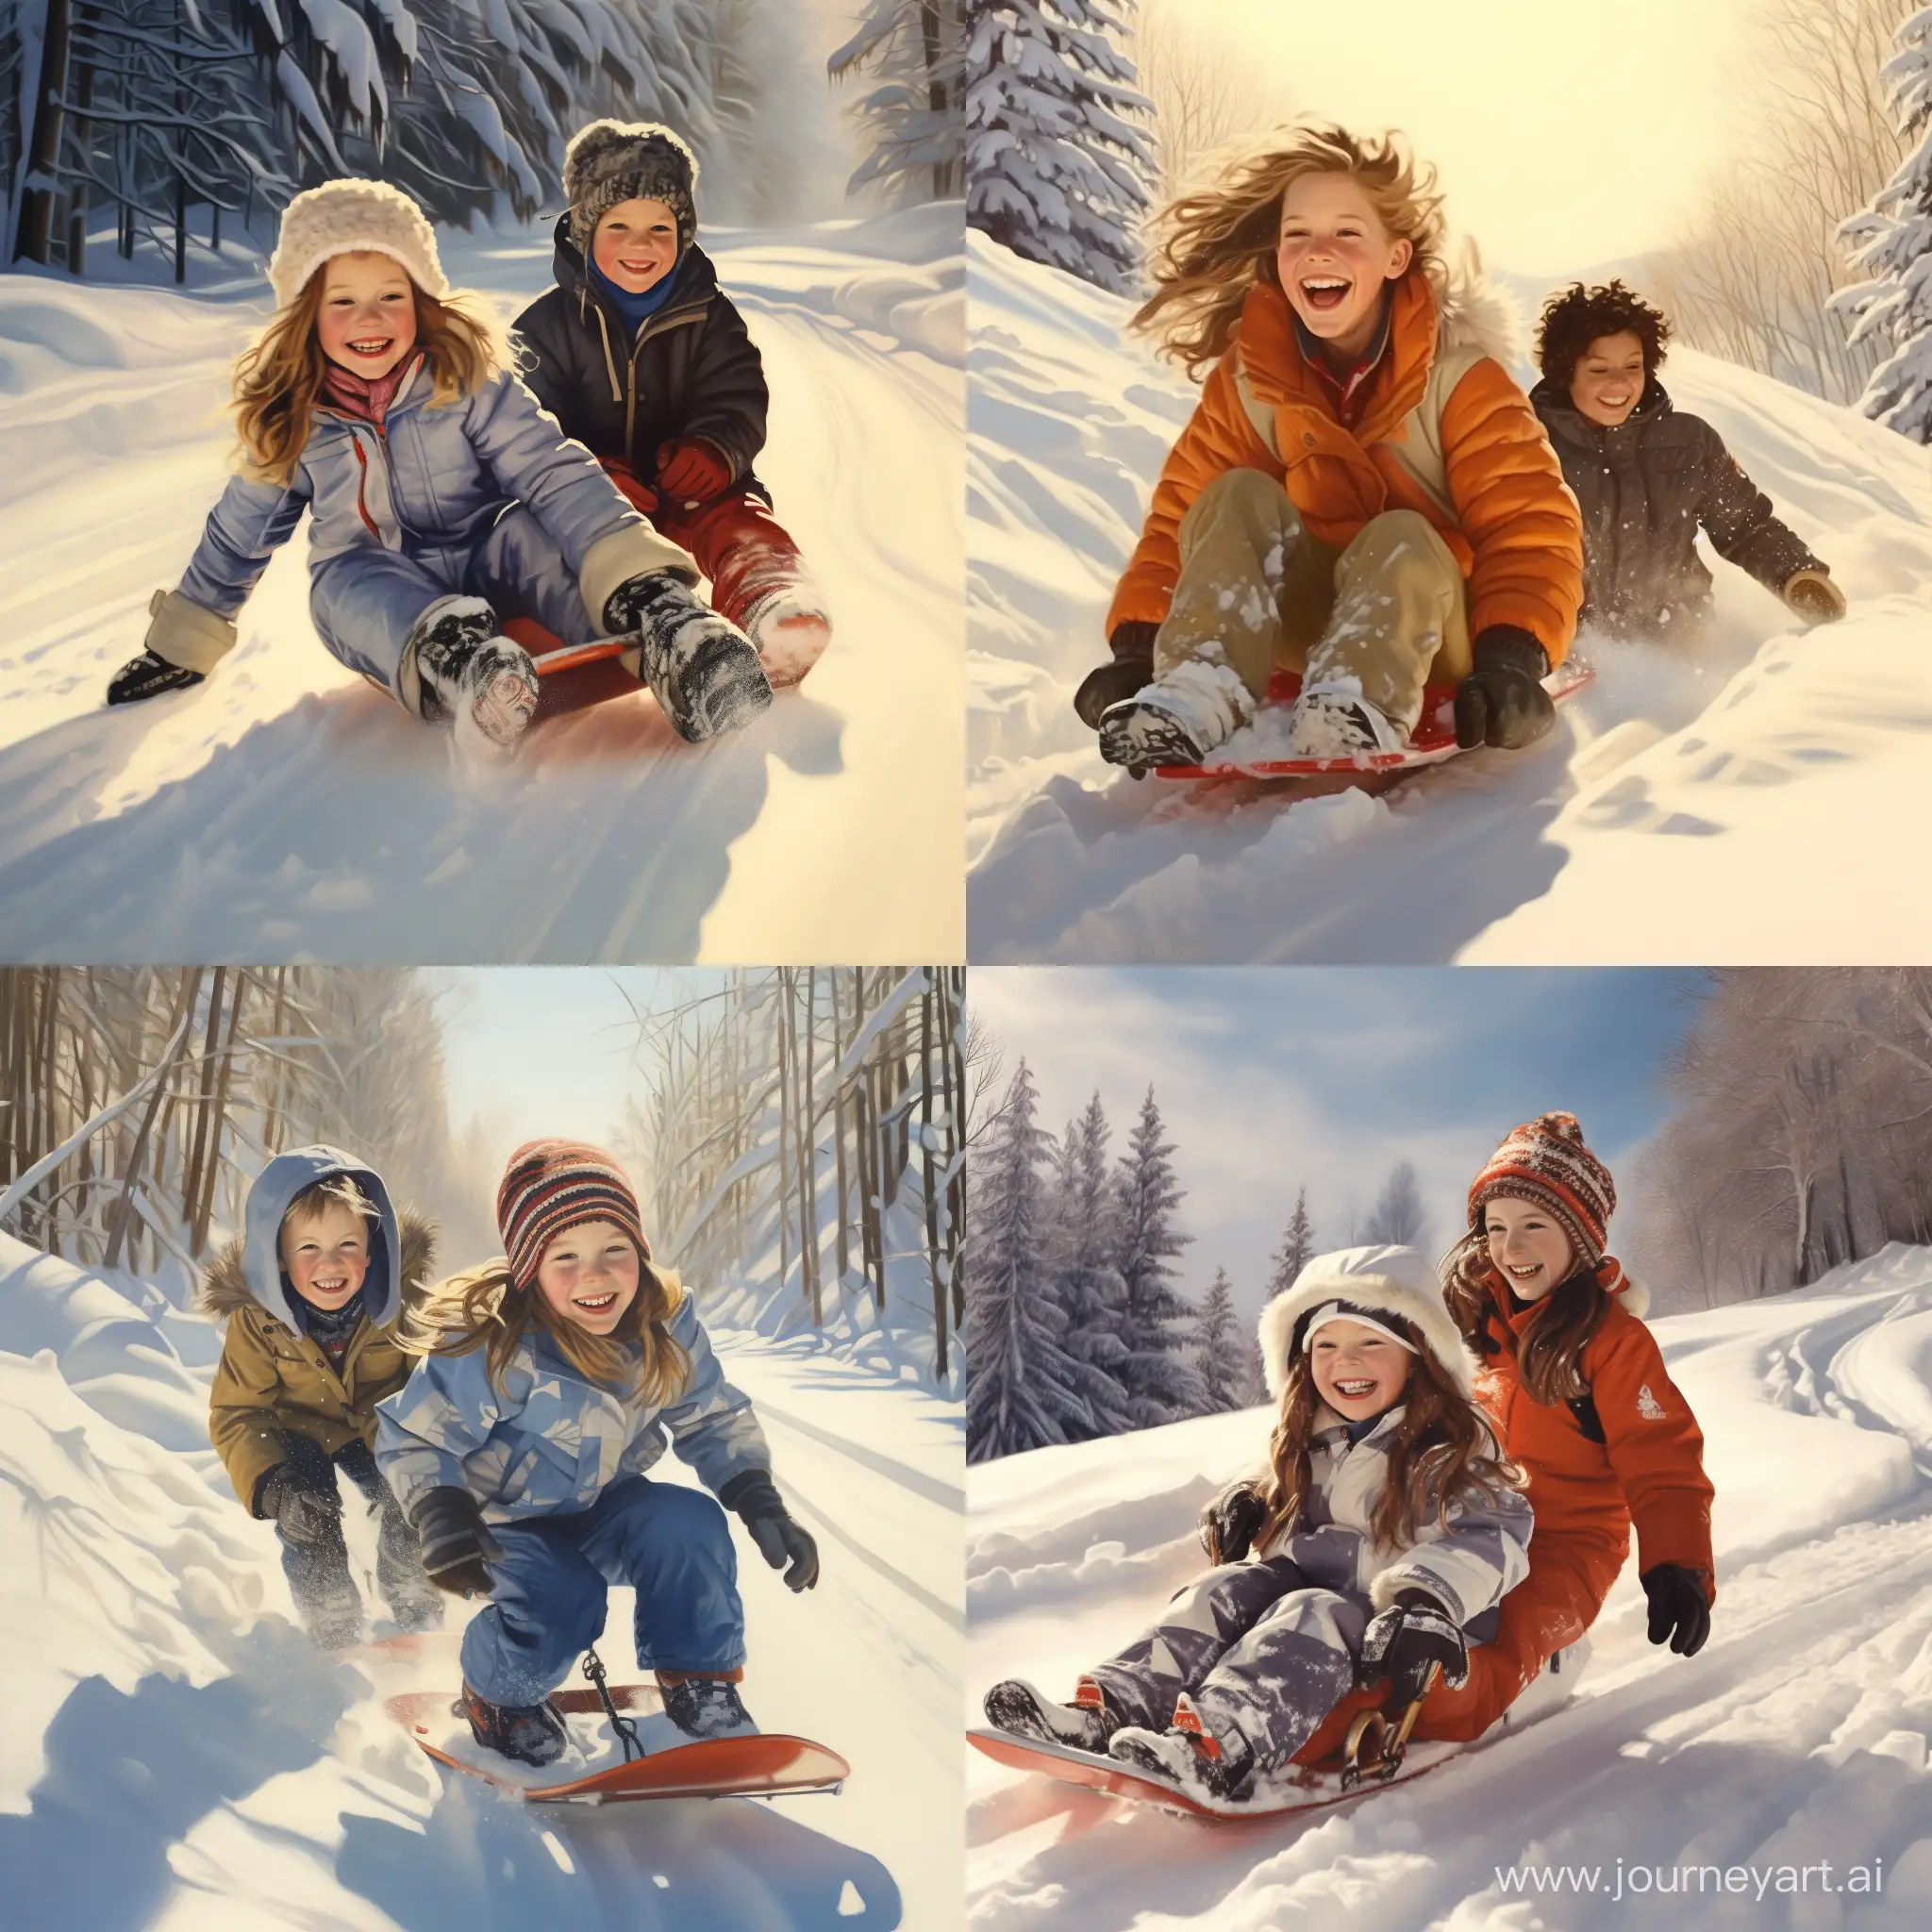 Девочка в зимней одежде и мальчик в зимней одежде, играют, веселятся и идут кататься со снежной естественной горки на санках, вокруг зимний лес, мороз и светит яркое солнце, фотография, гиперреализм, высокая чёткость